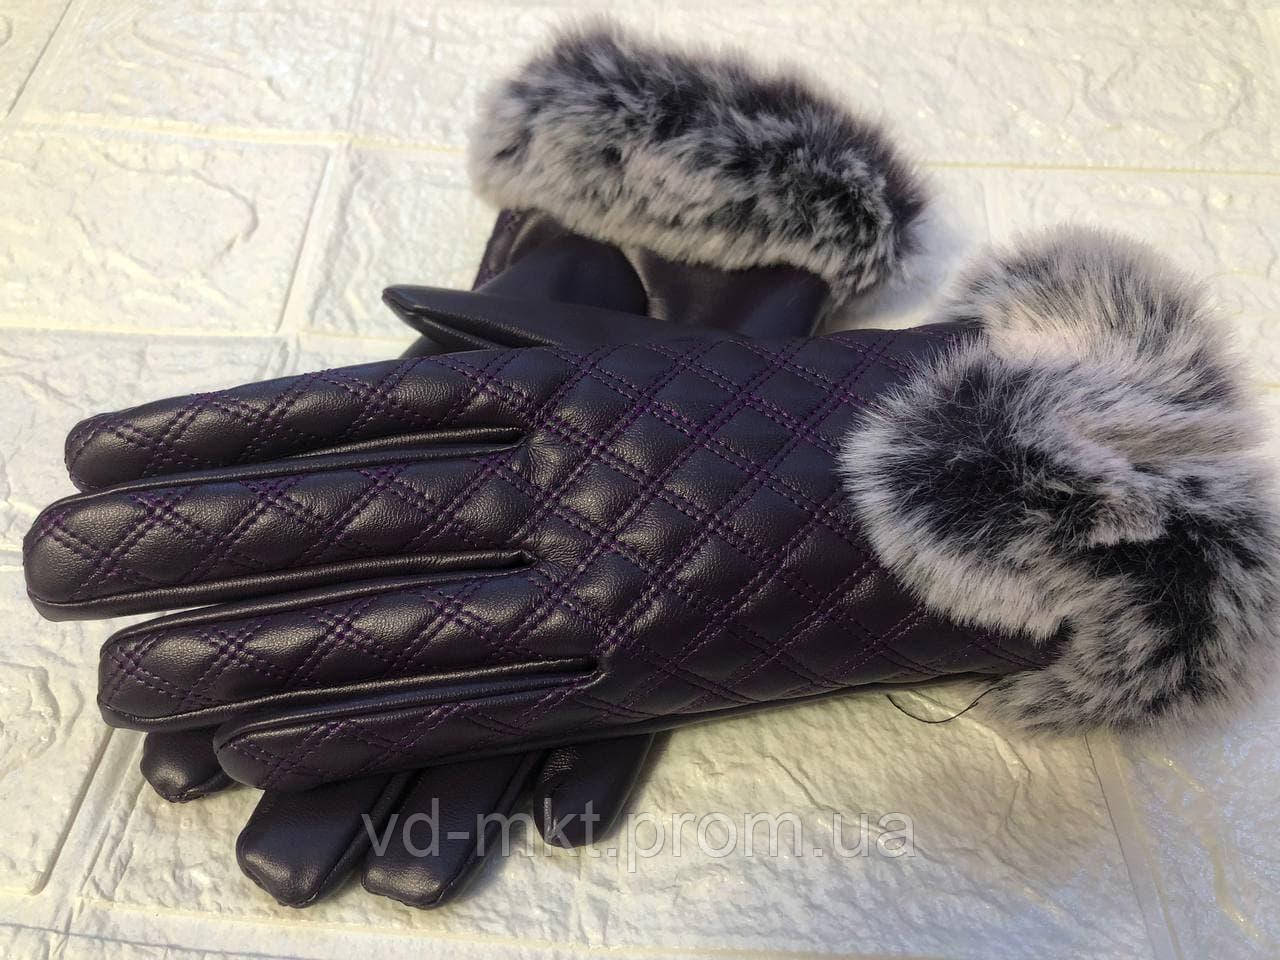 

Кожаные женские перчатки, теплые зимние женские перчатки, черные теплые перчатки., Черный